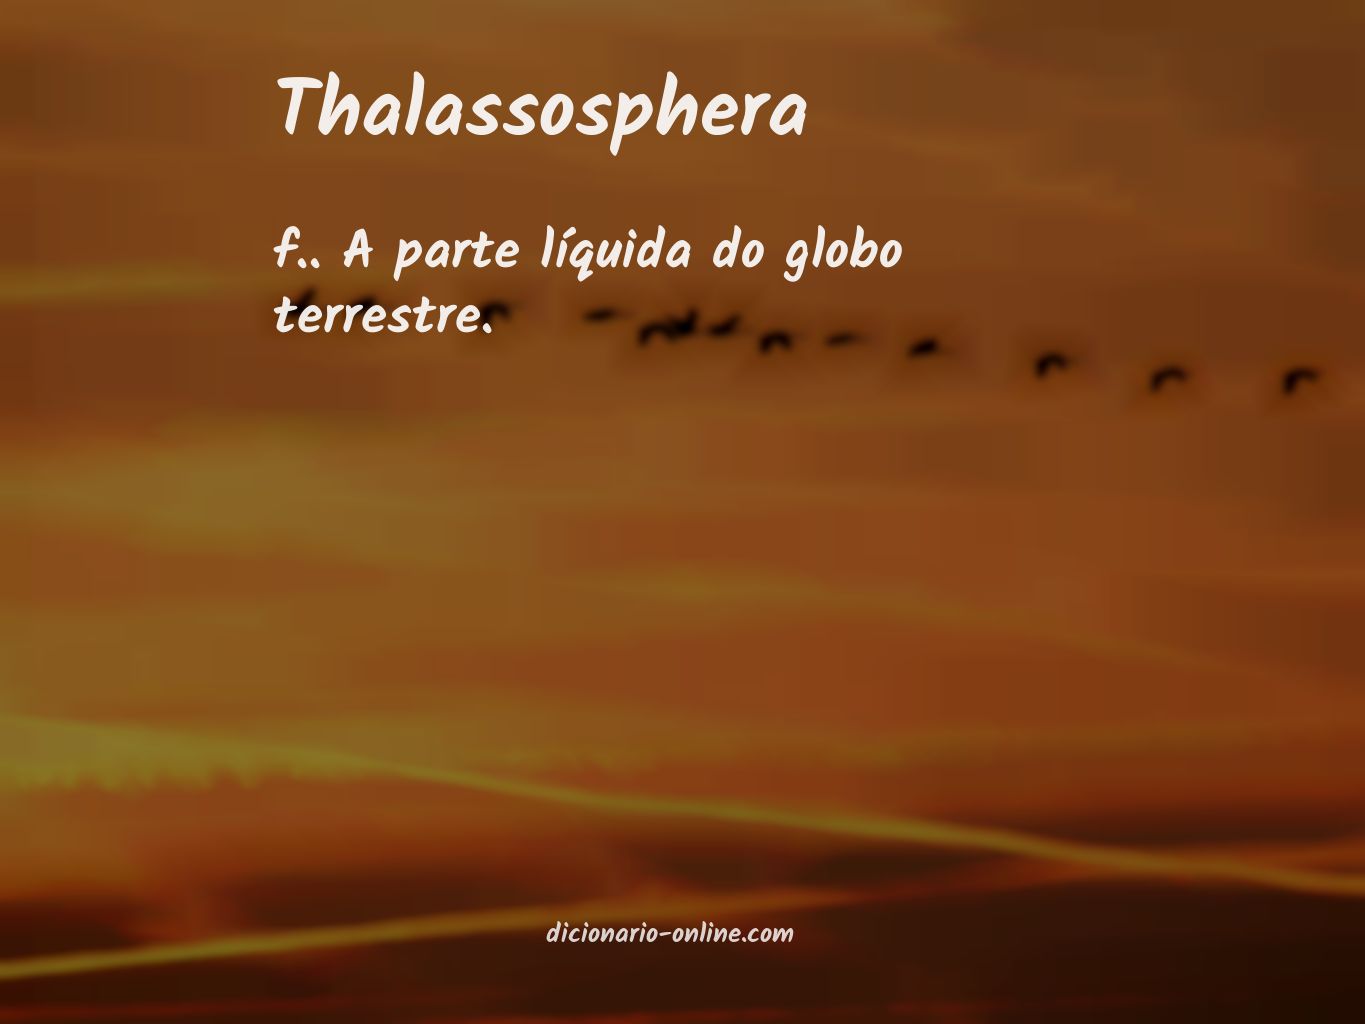 Significado de thalassosphera